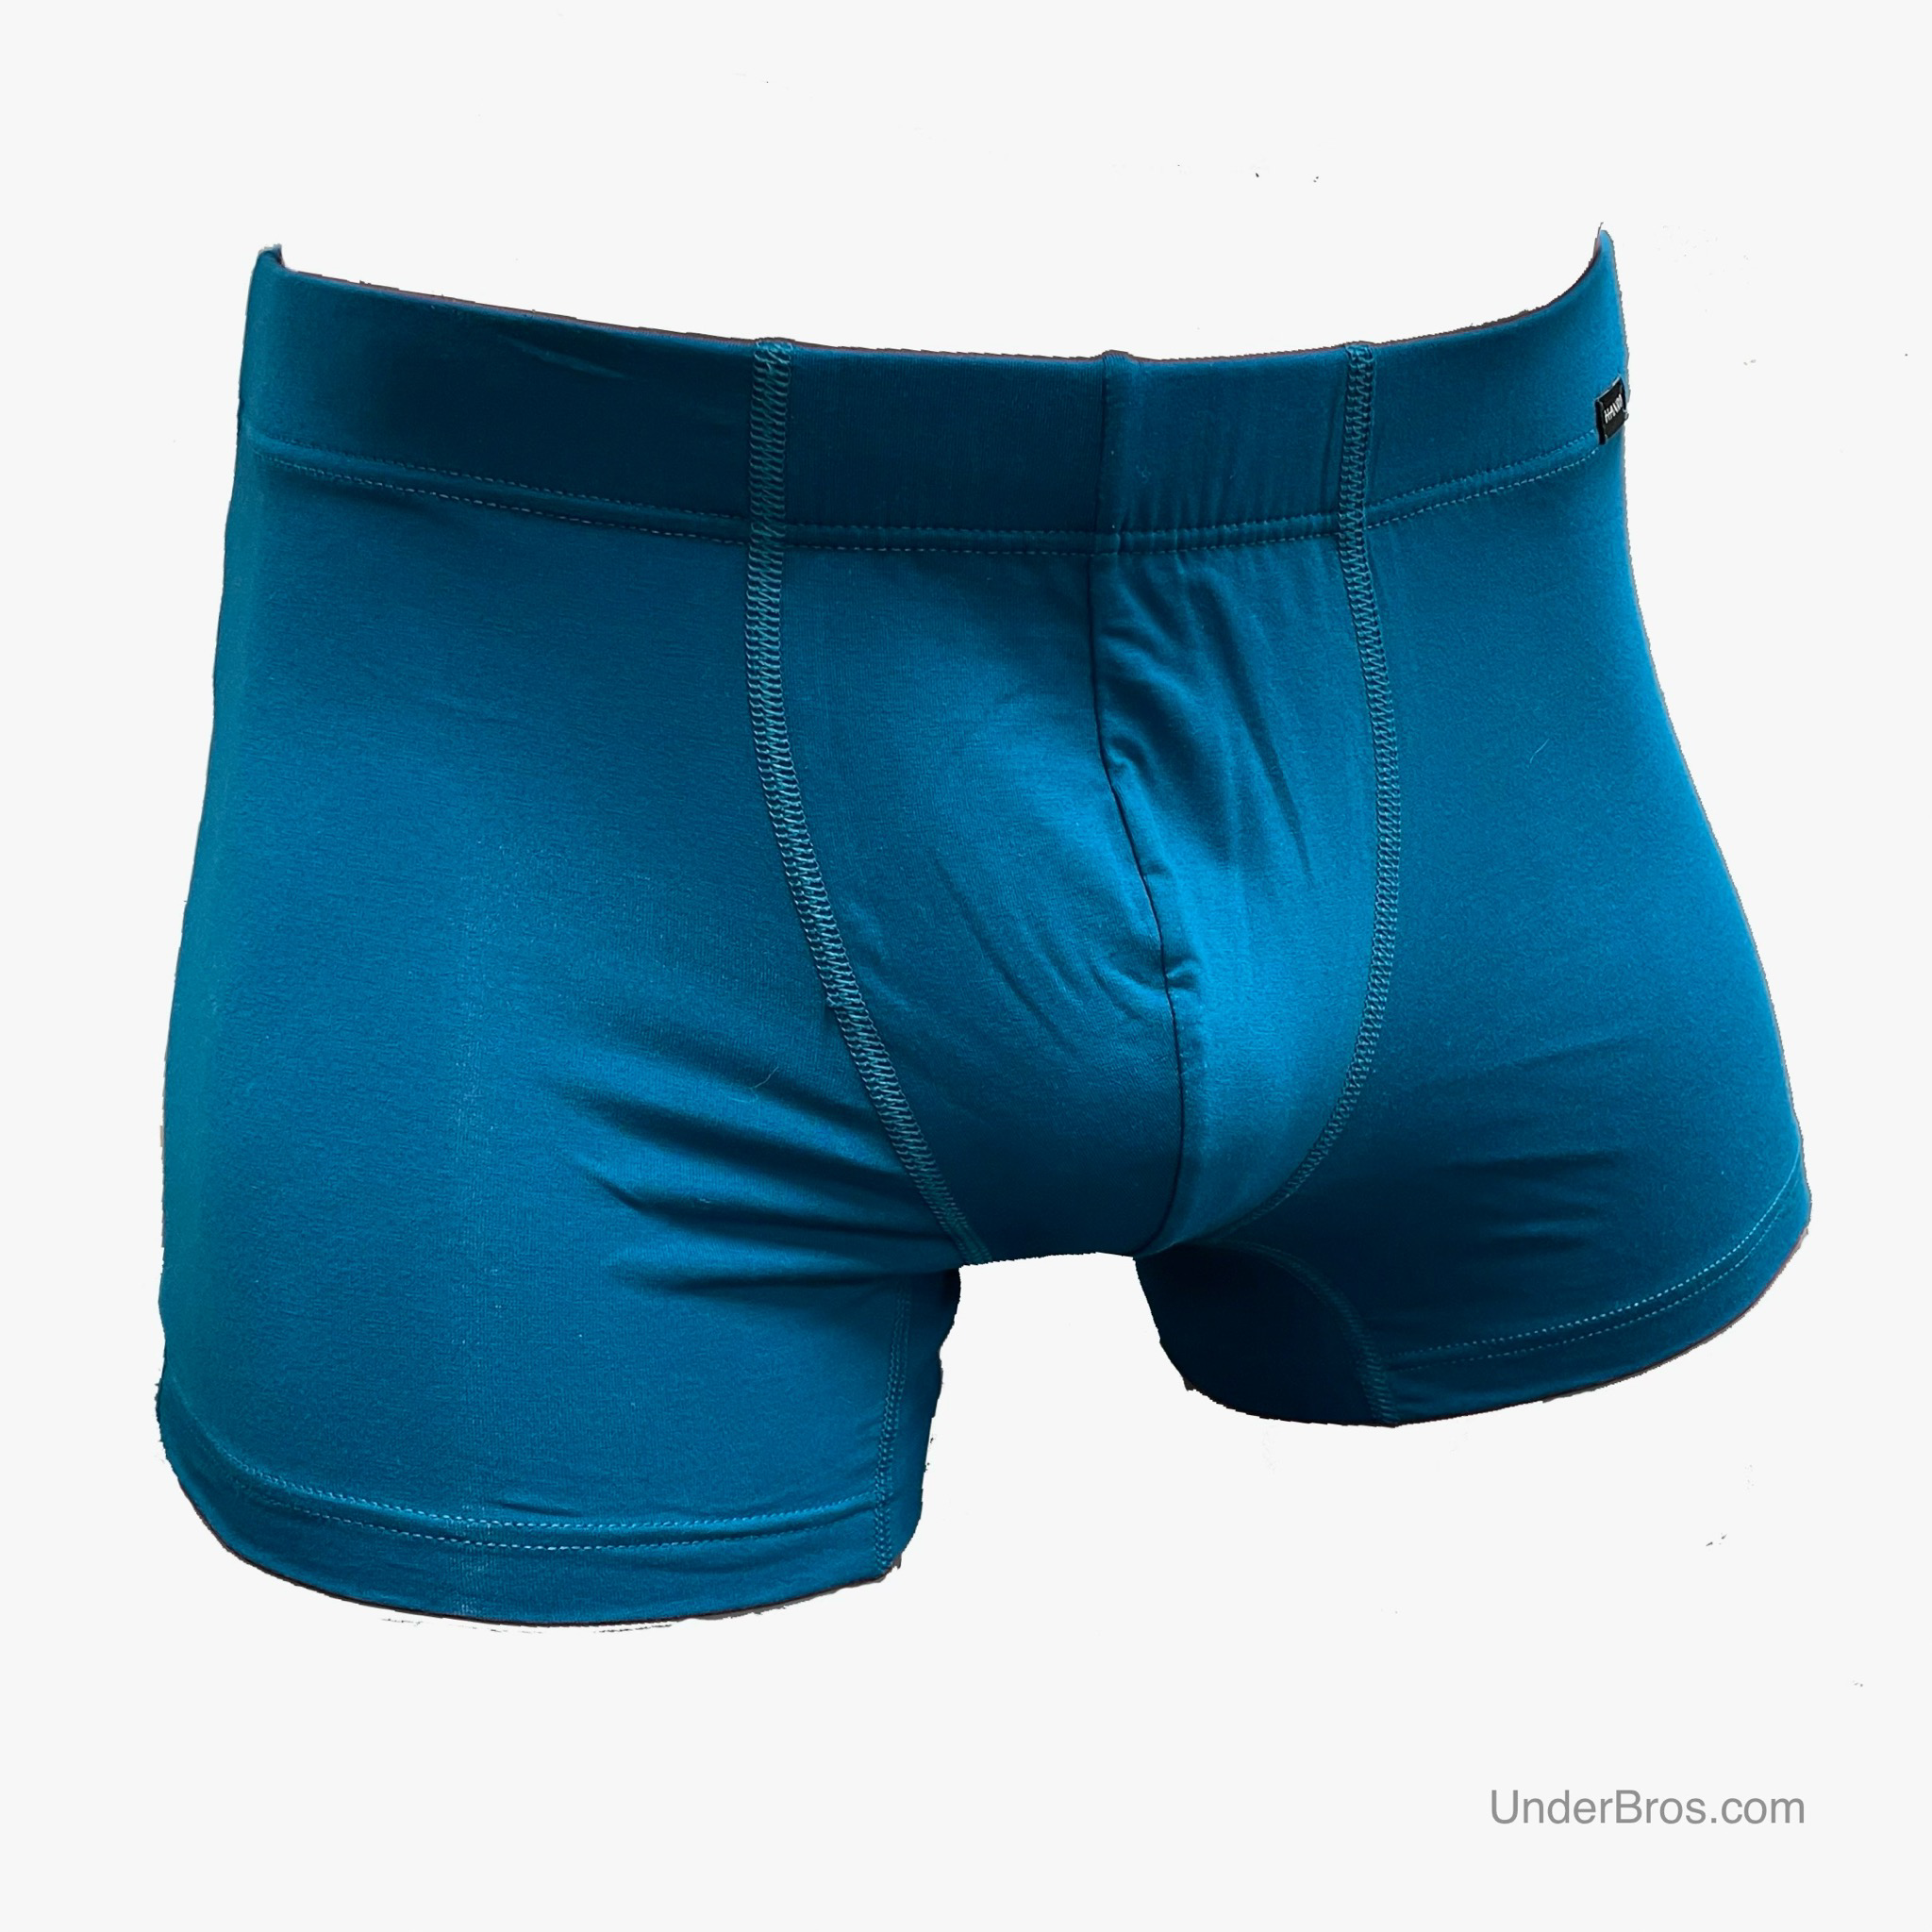 Parhaat bokserit ja alushousut miehille | UnderBros